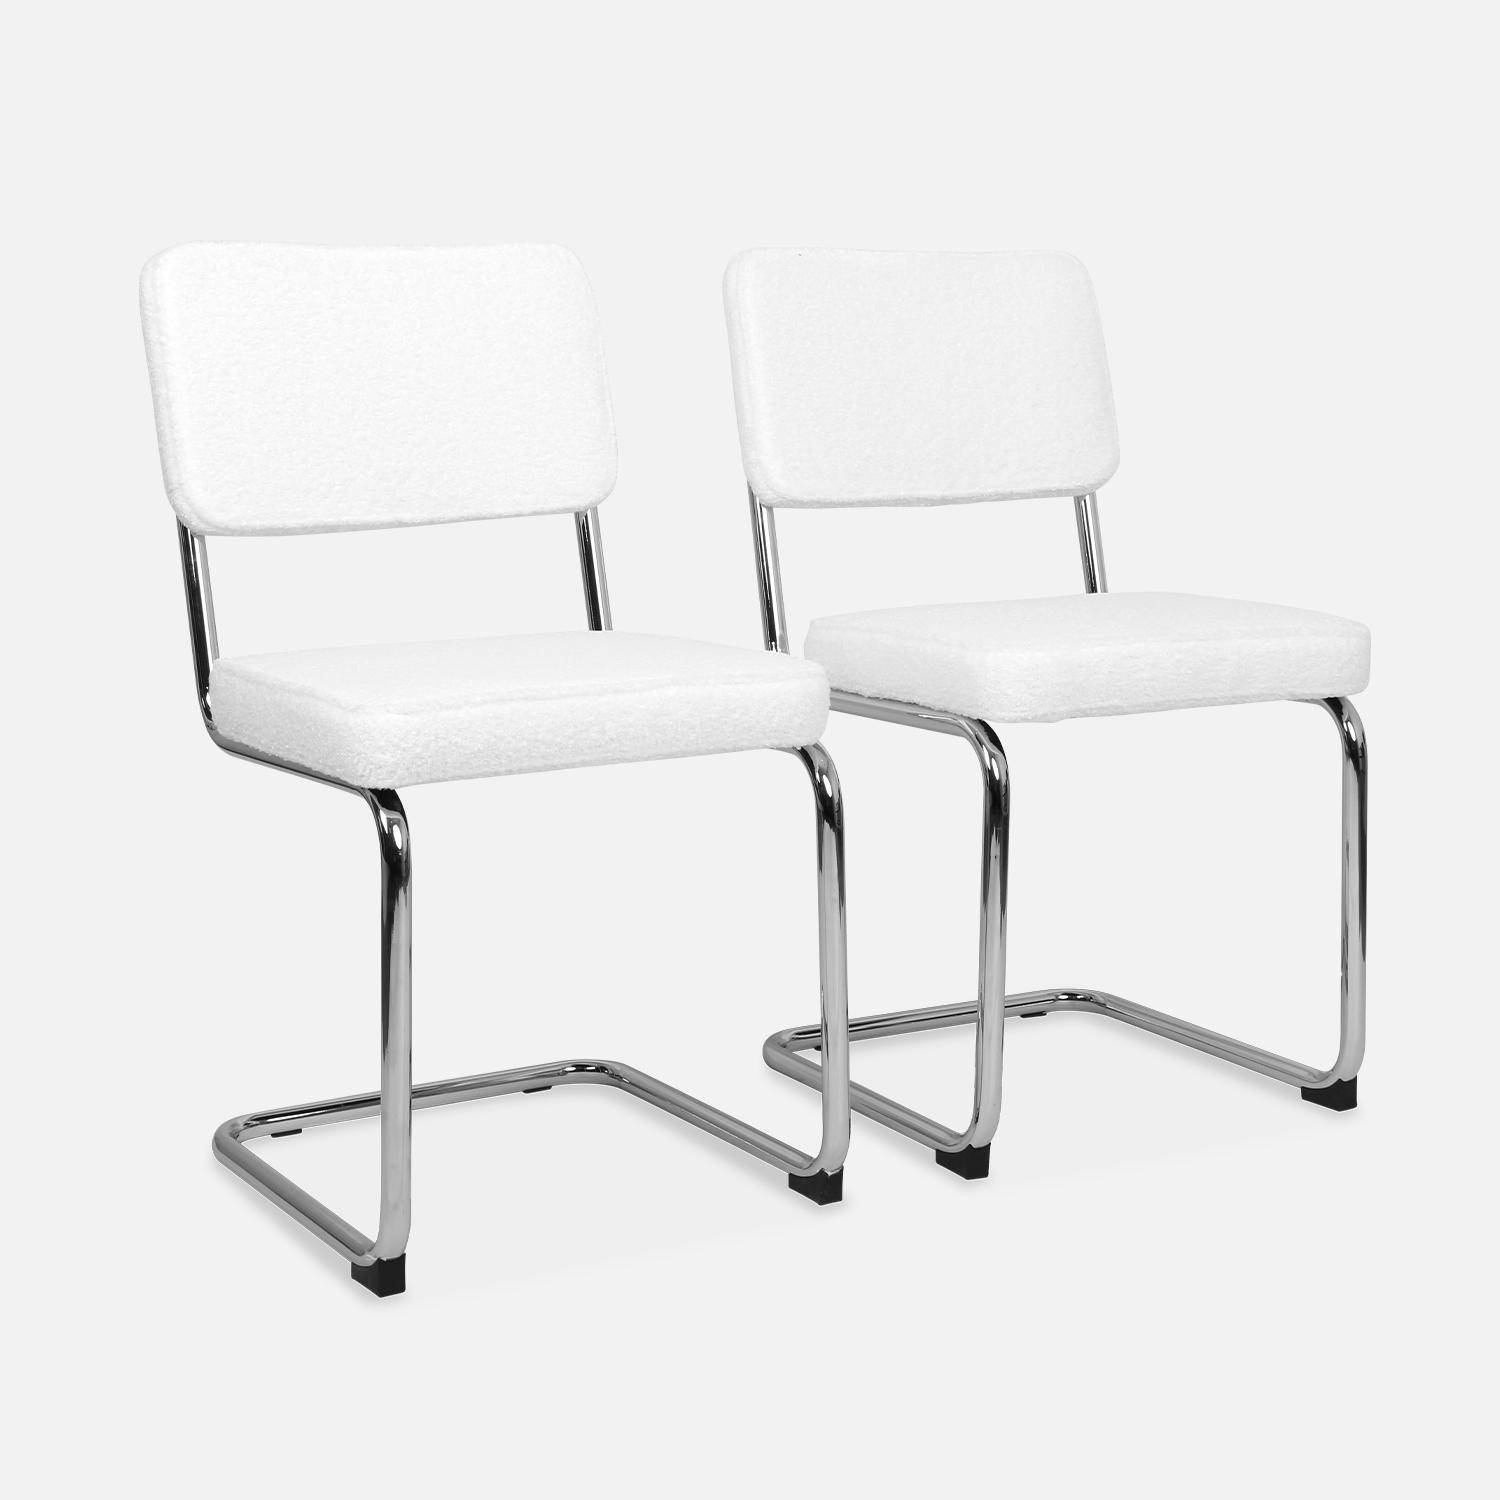 2 cadeiras cantilever - Maja - com caracóis brancos, 46 x 54,5 x 84,5cm Photo4